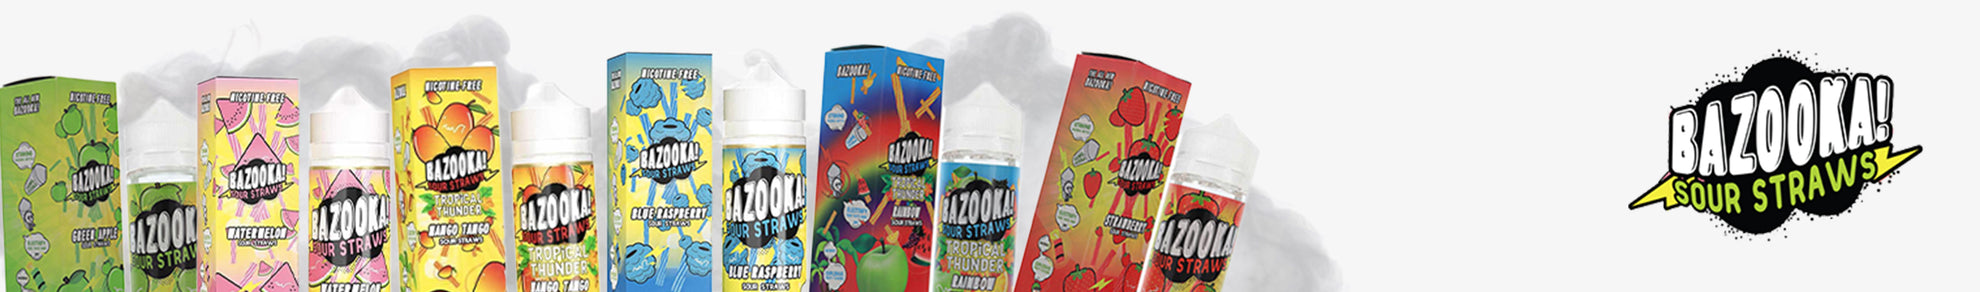 Bazooka! Sour Straws Nicotine Salts By Kilo